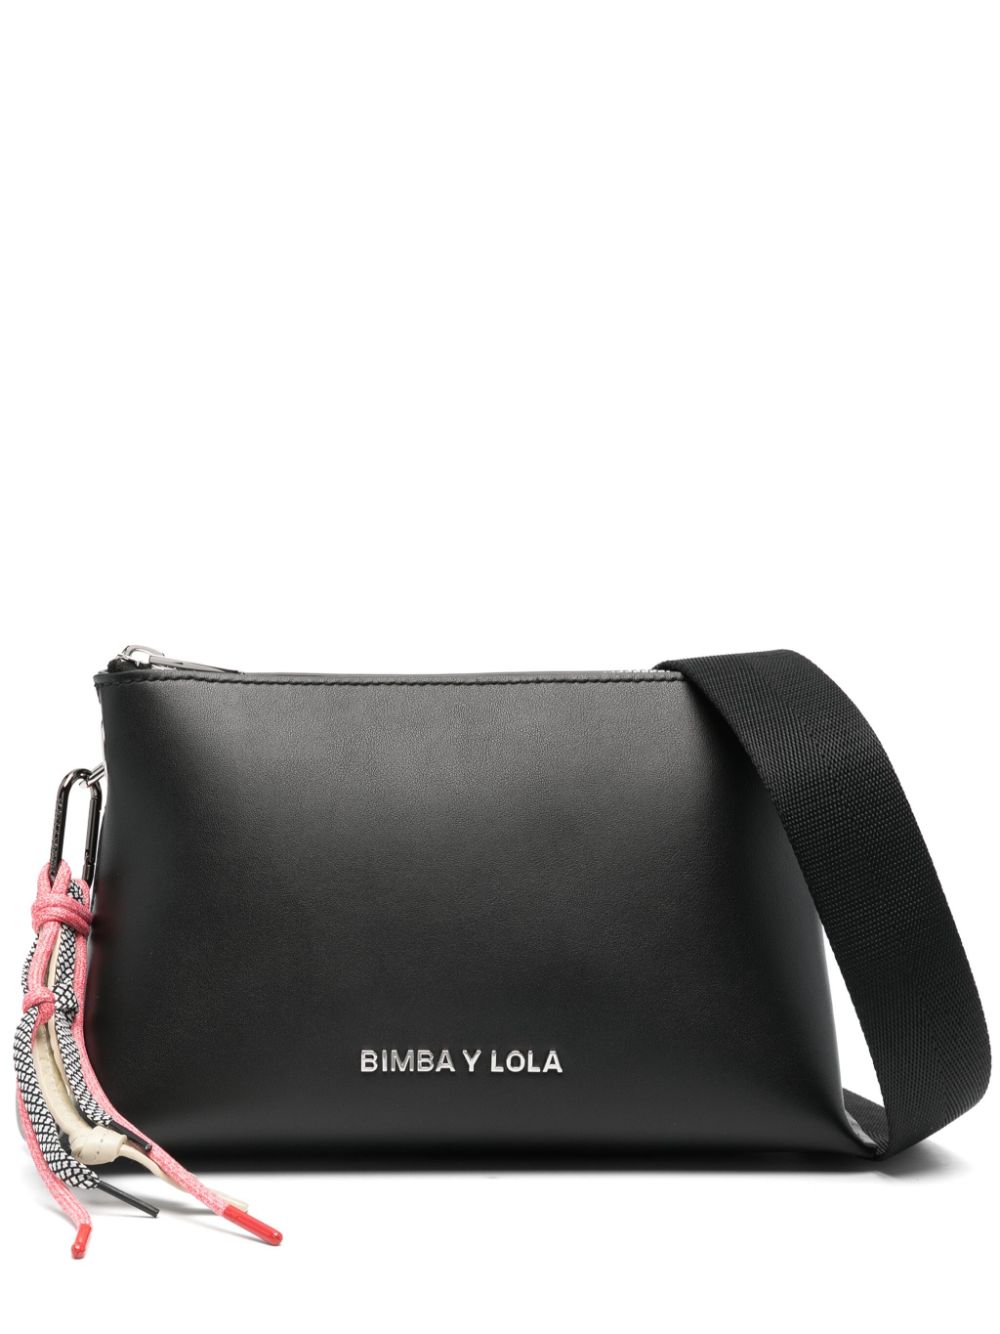 Bimba y Lola small leather shoulder bag - Black von Bimba y Lola